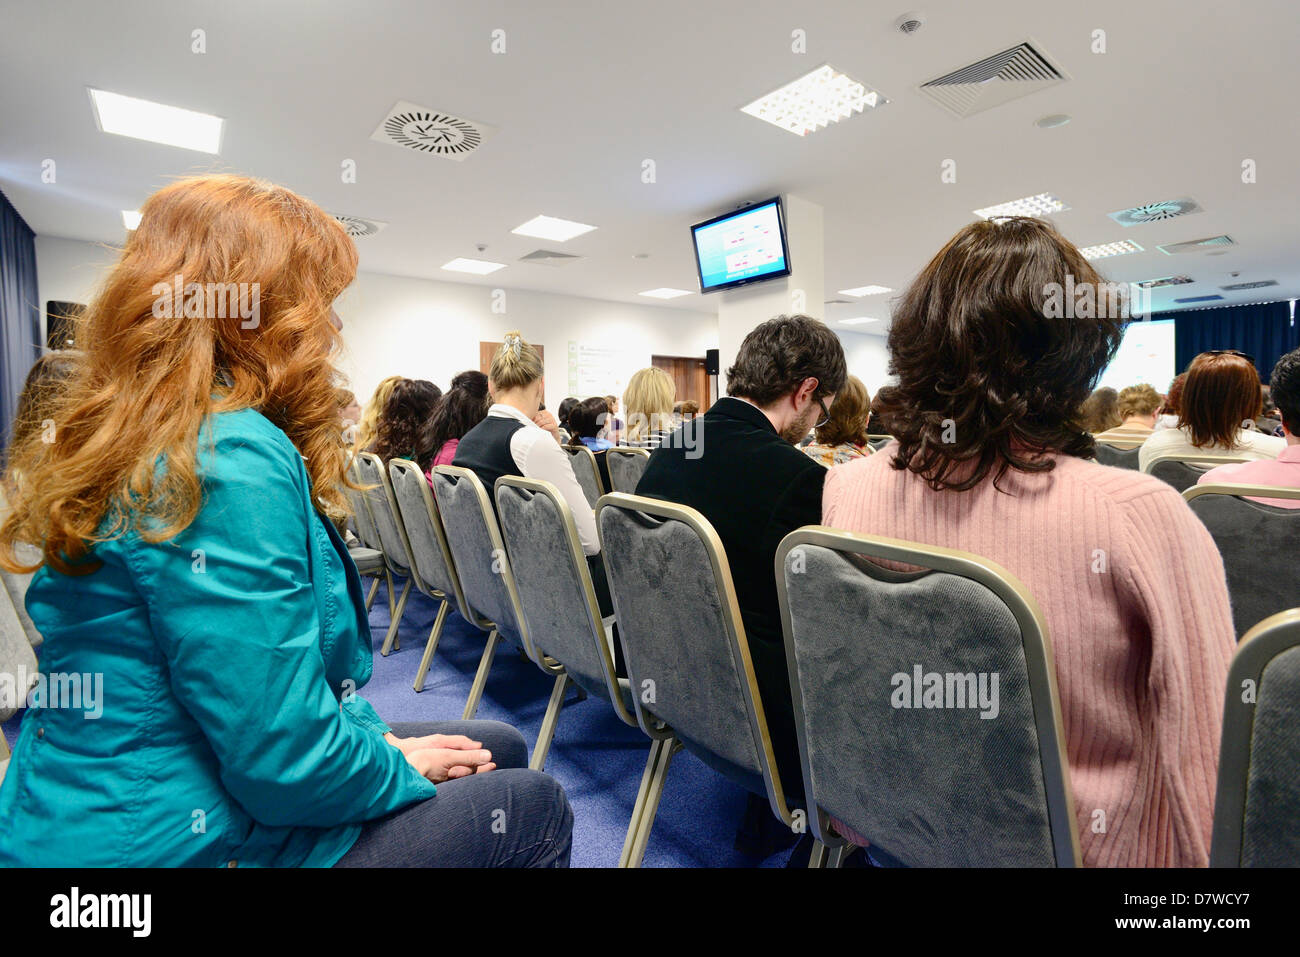 Publikum hören während einer professionellen Präsentation Stockfoto